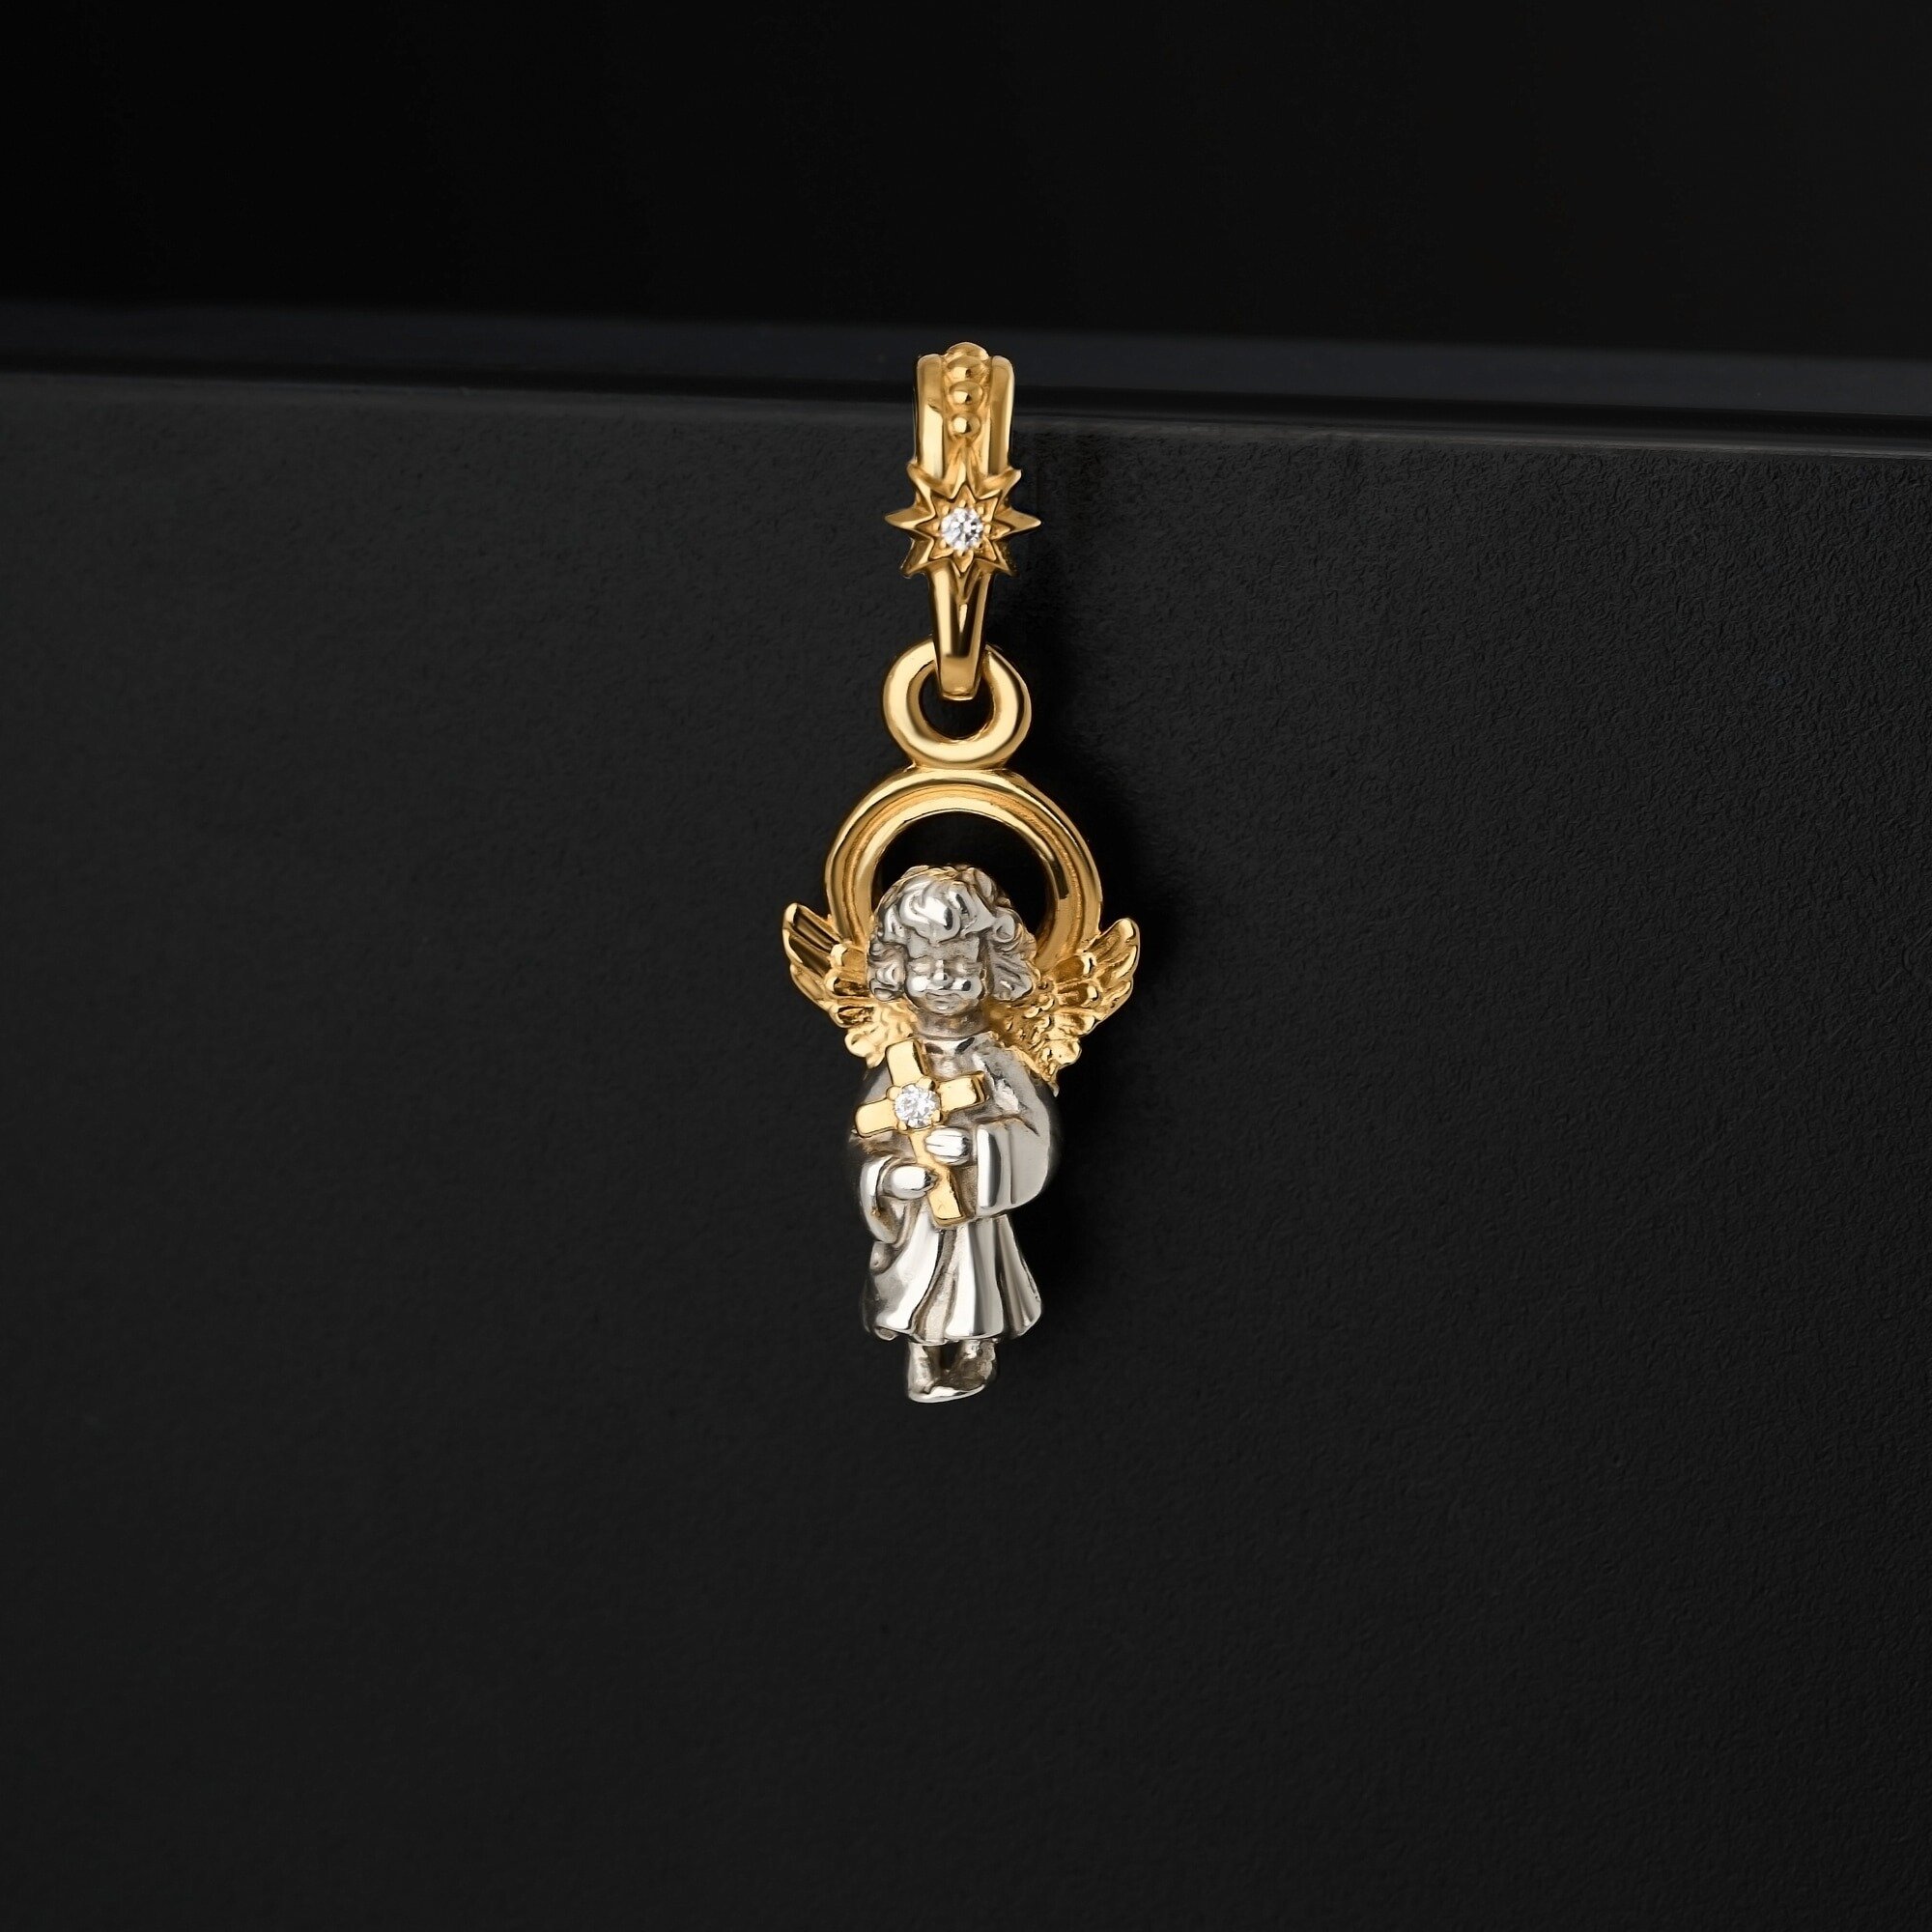 Подвеска Ангел-Хранитель Иконка православная Серебро 925 с позолотой 999, Ангелок для ребенка, любимого человека, защитник, кулон двухсторонний амулет